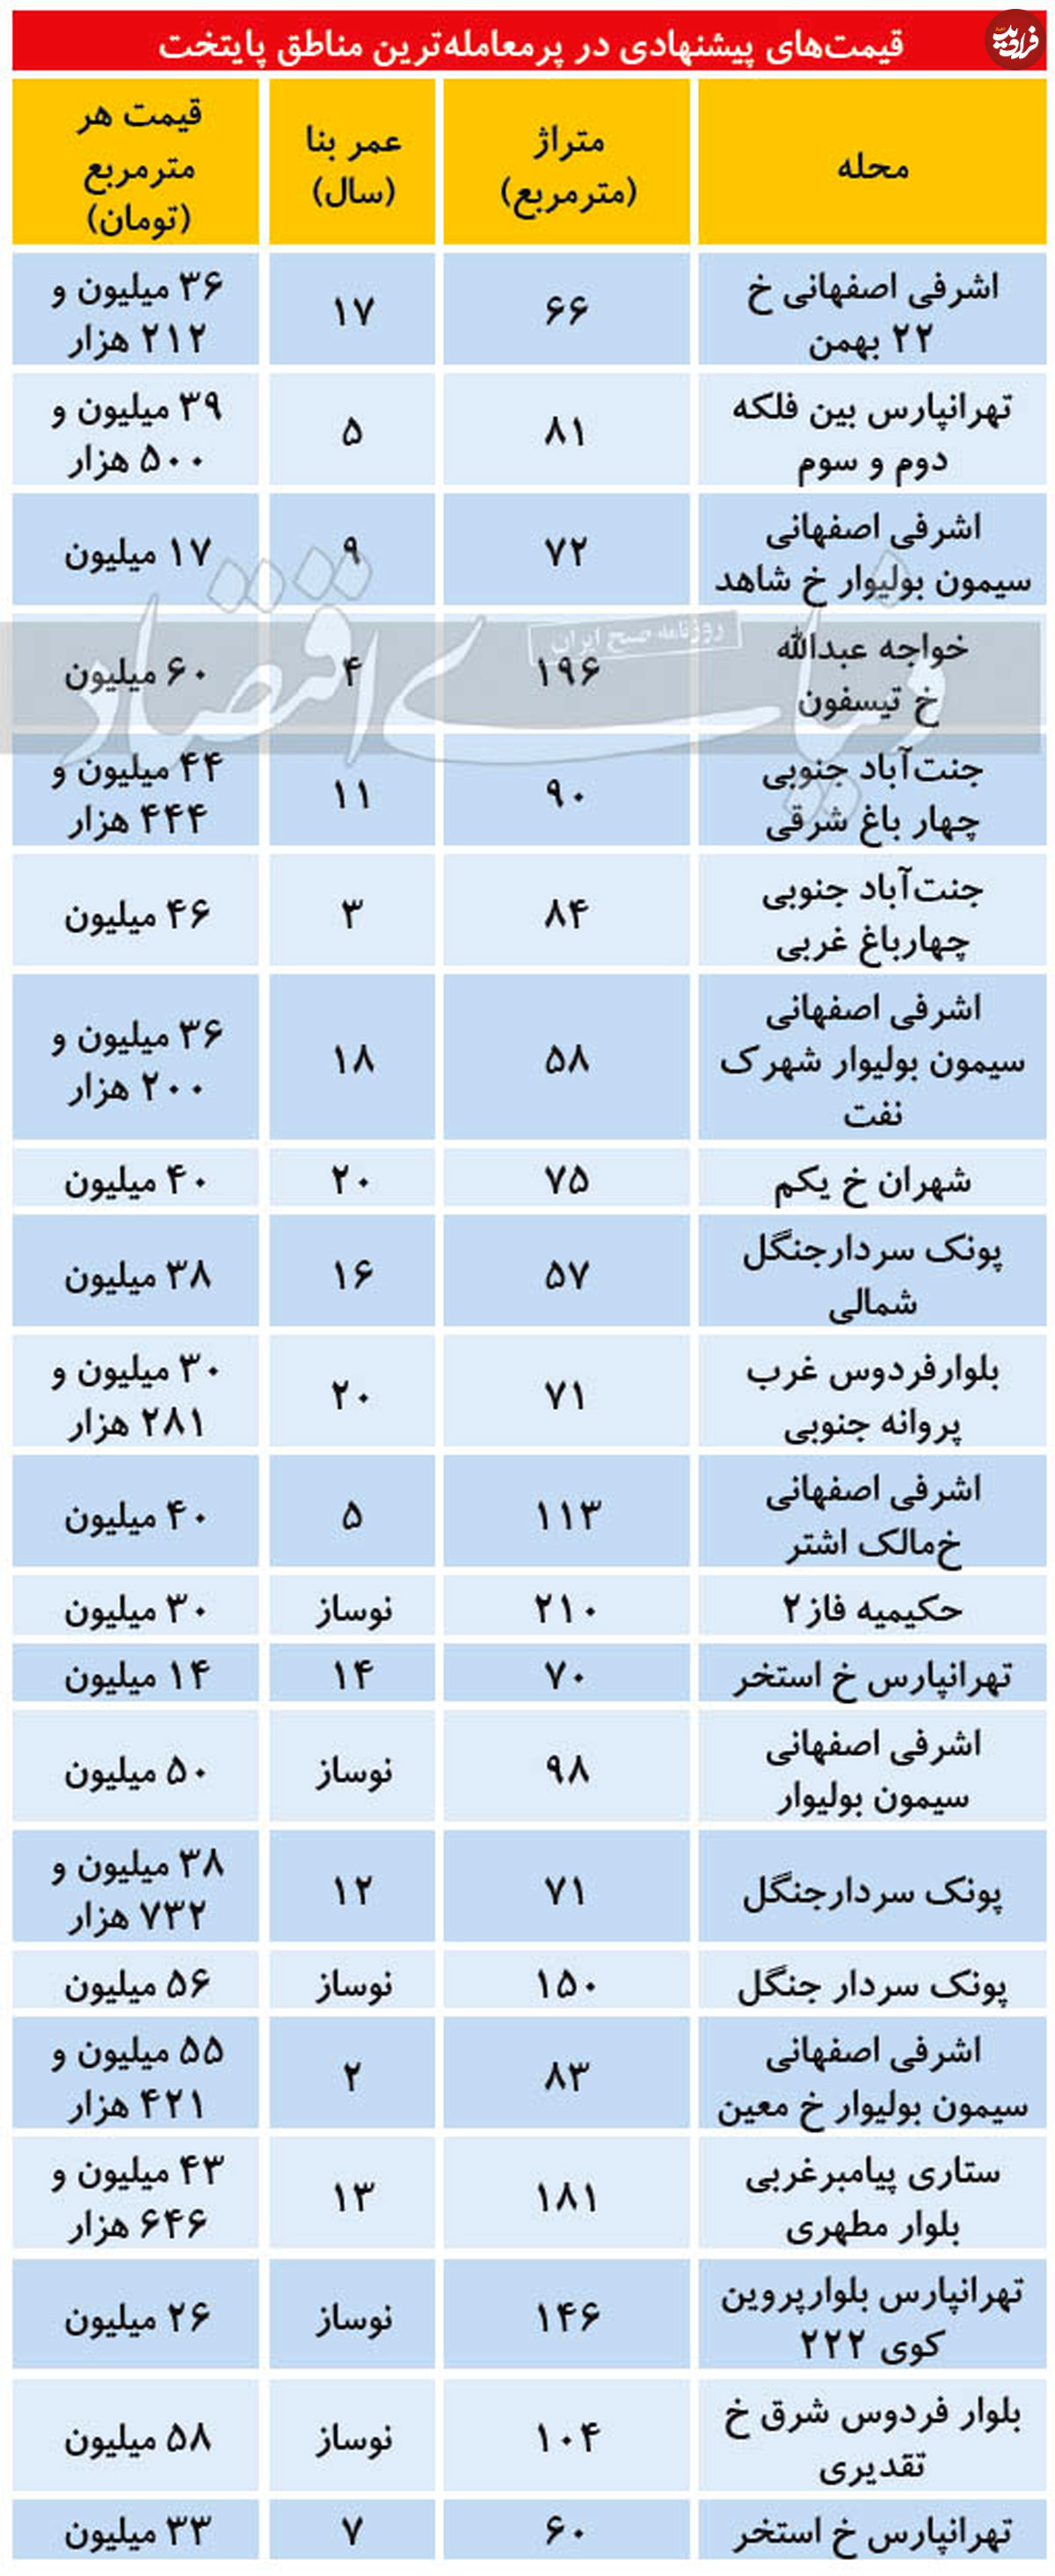 قیمت آپارتمان در مناطق پرمعامله تهران